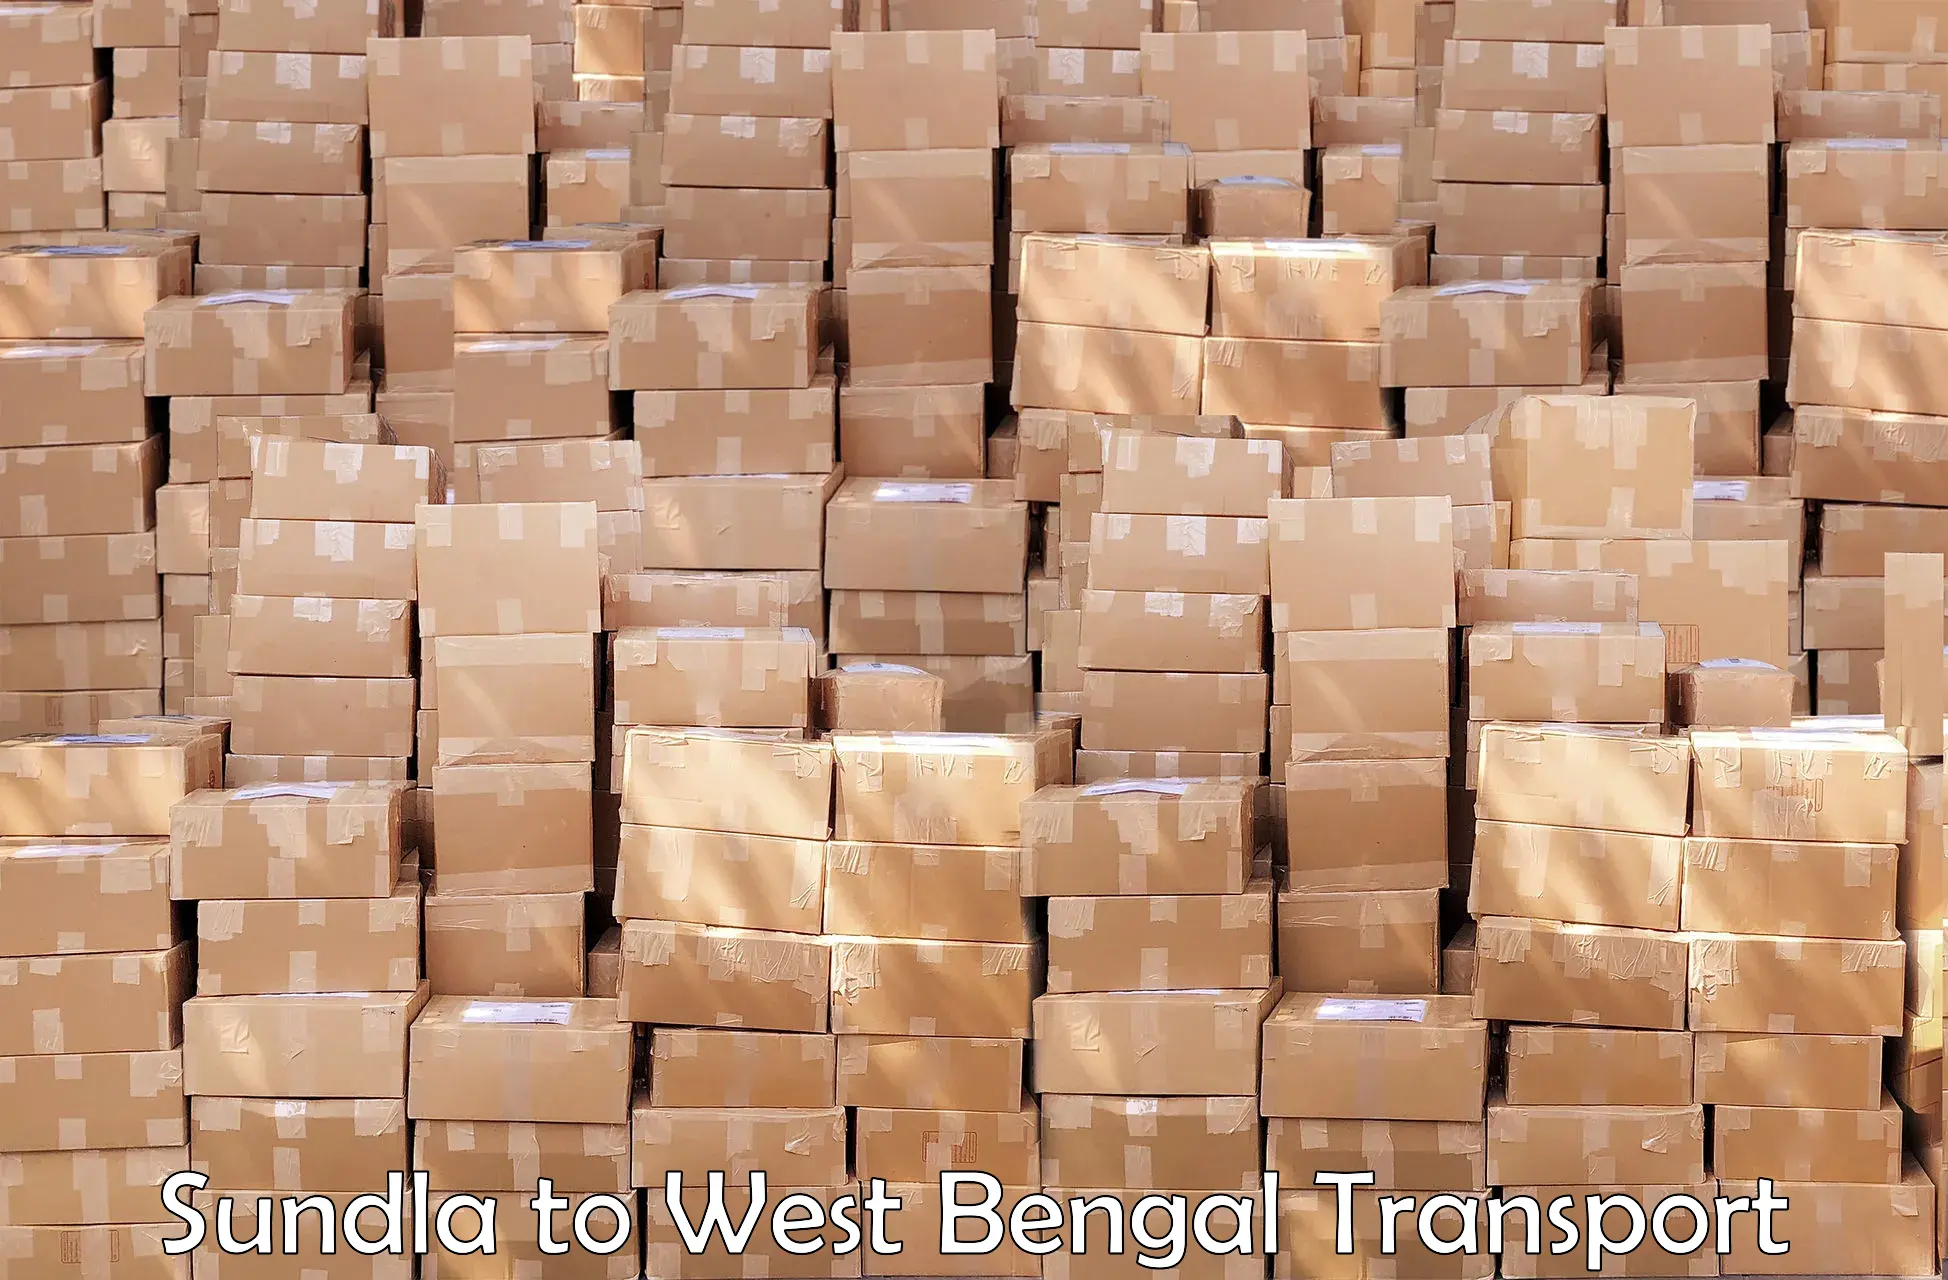 Cargo train transport services Sundla to Berhampore